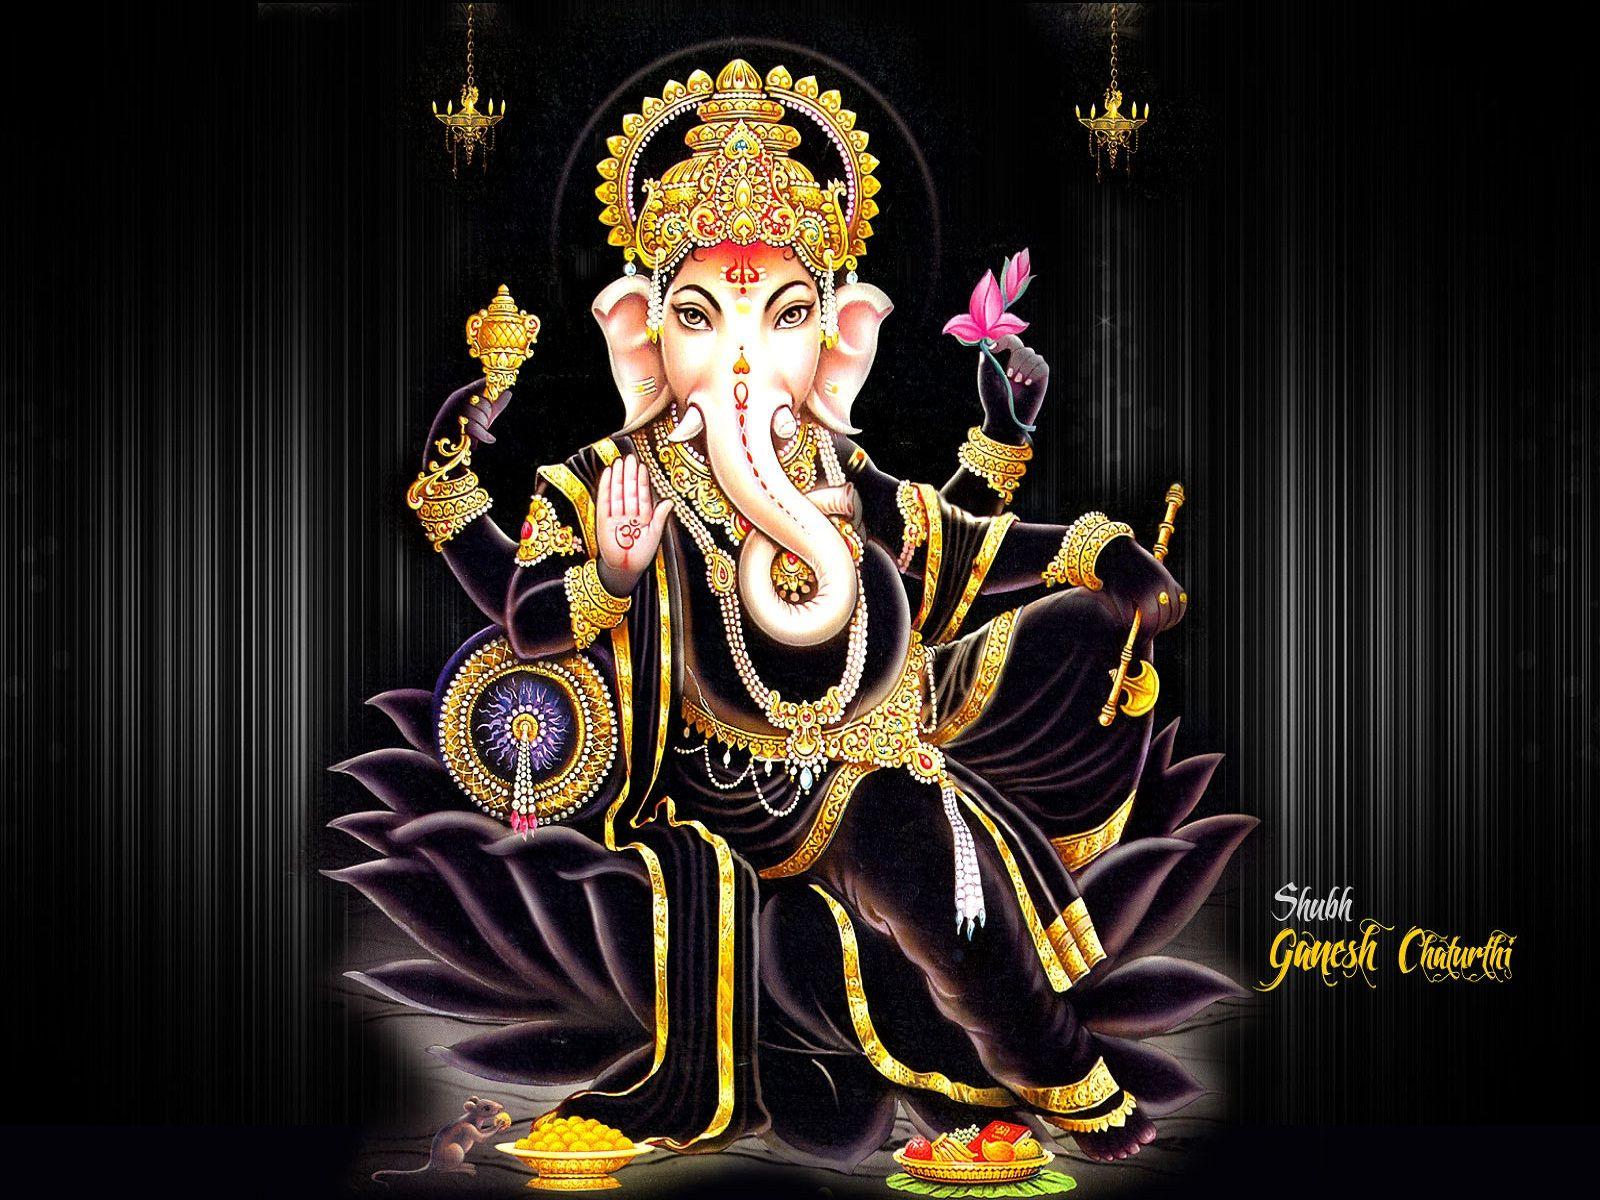 Lord Ganesha image, wallpaper, photo & pics, download vinayagar